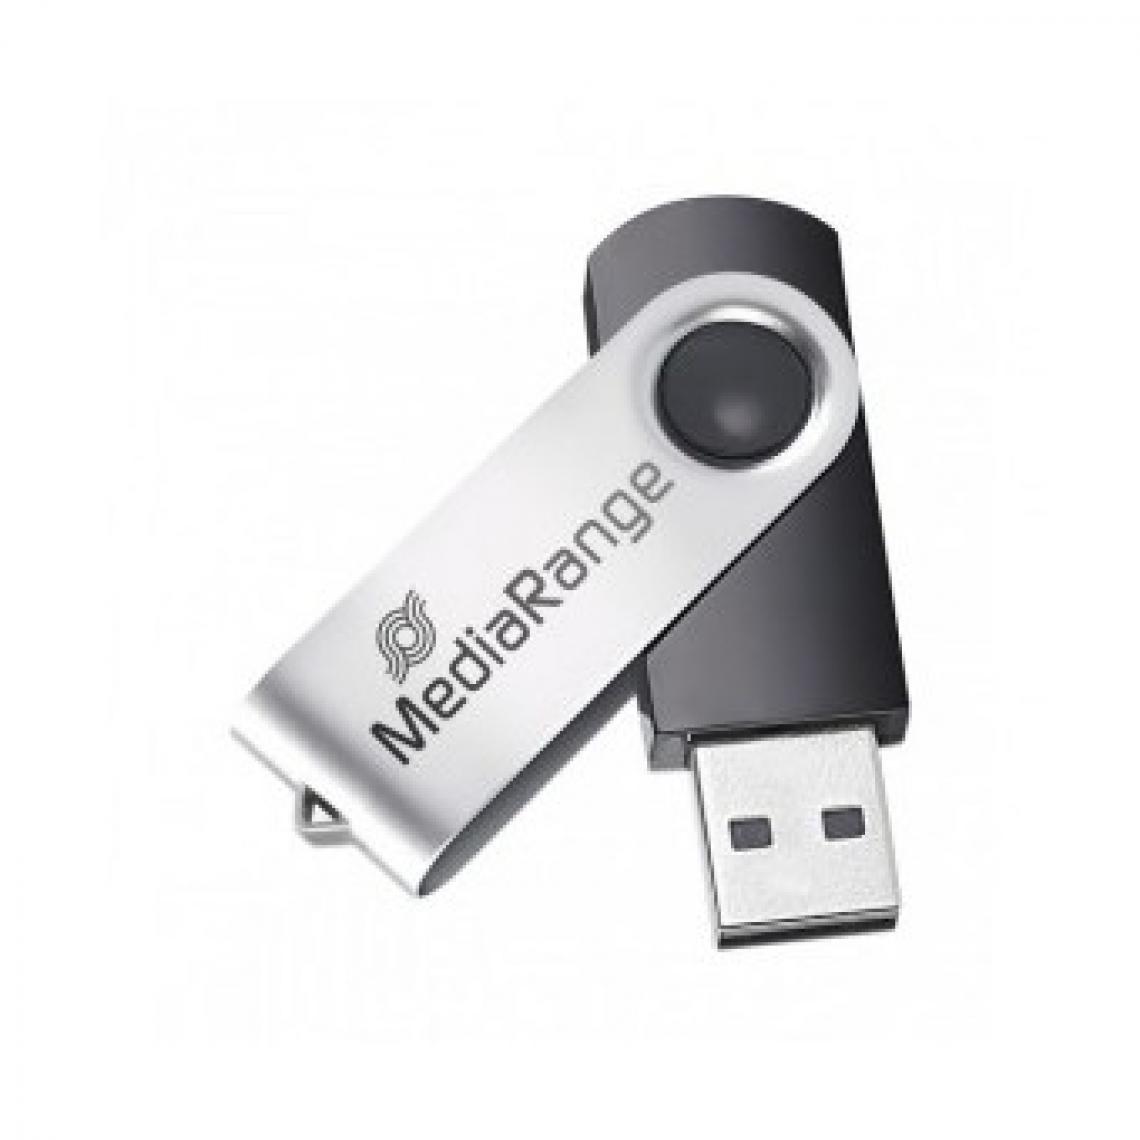 Mediarange - Clé usb 8go Mediarange 2.0 argent - Clés USB